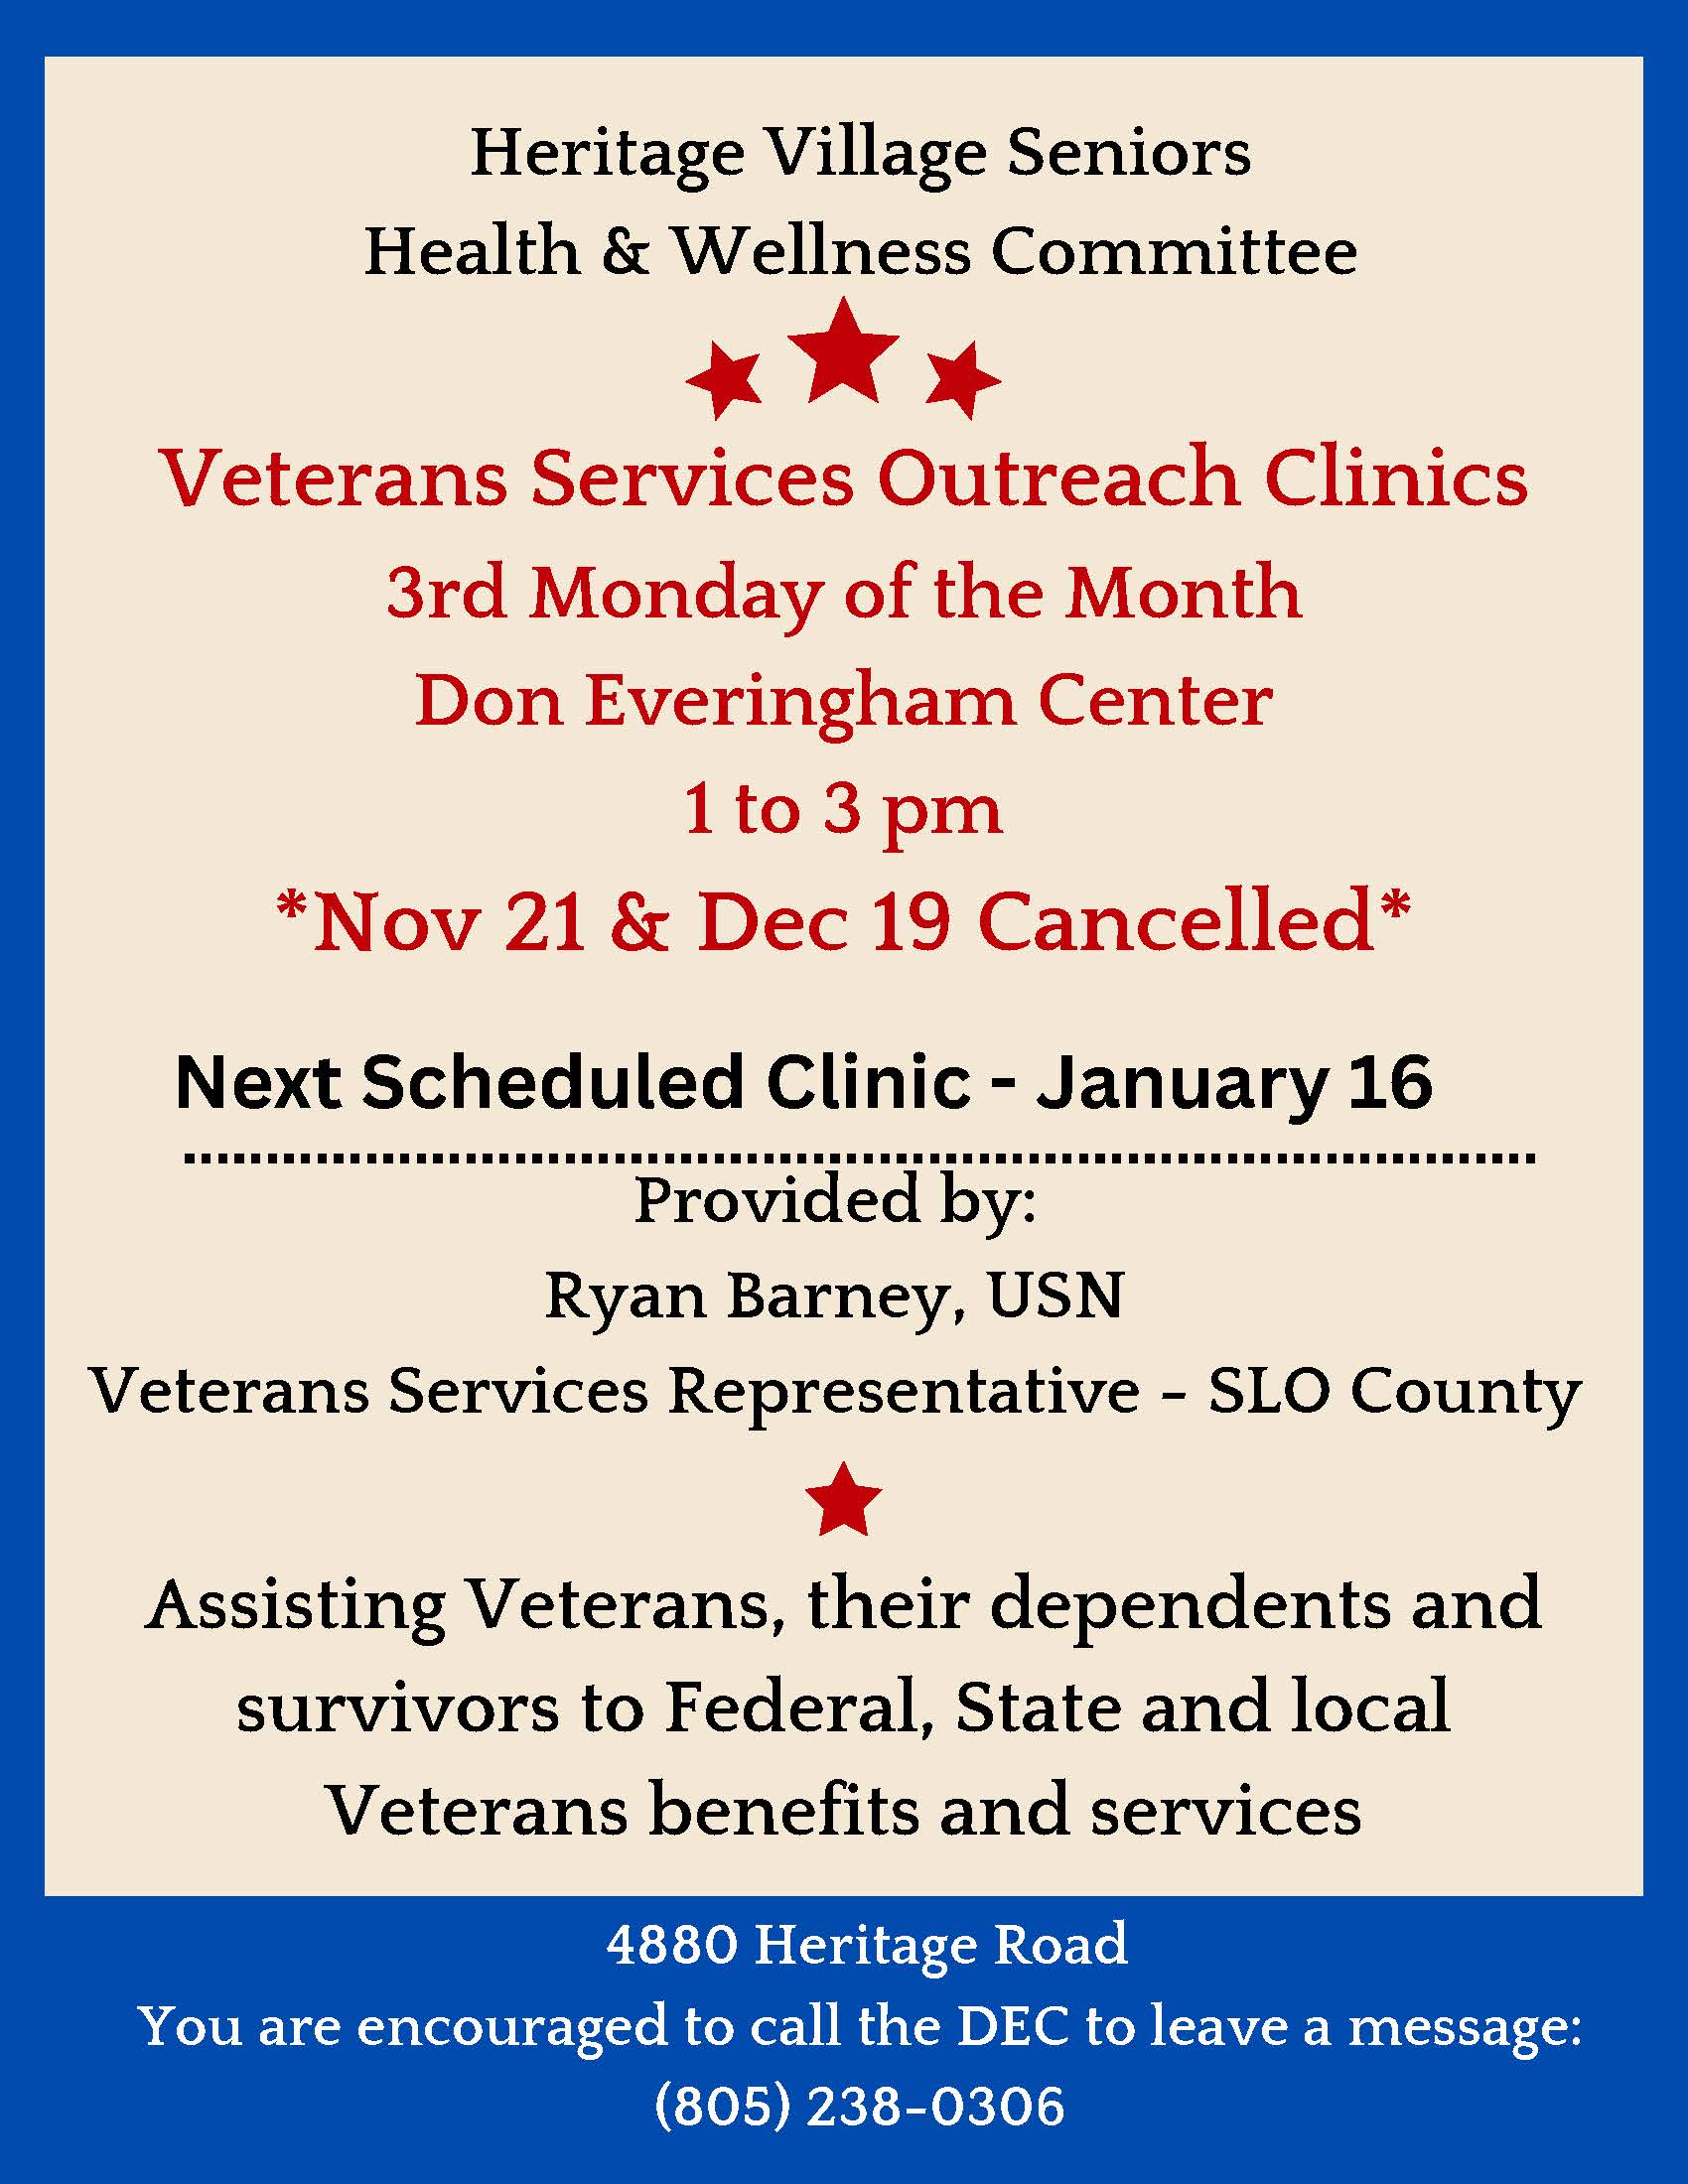 VA Outreach Clinics revised form